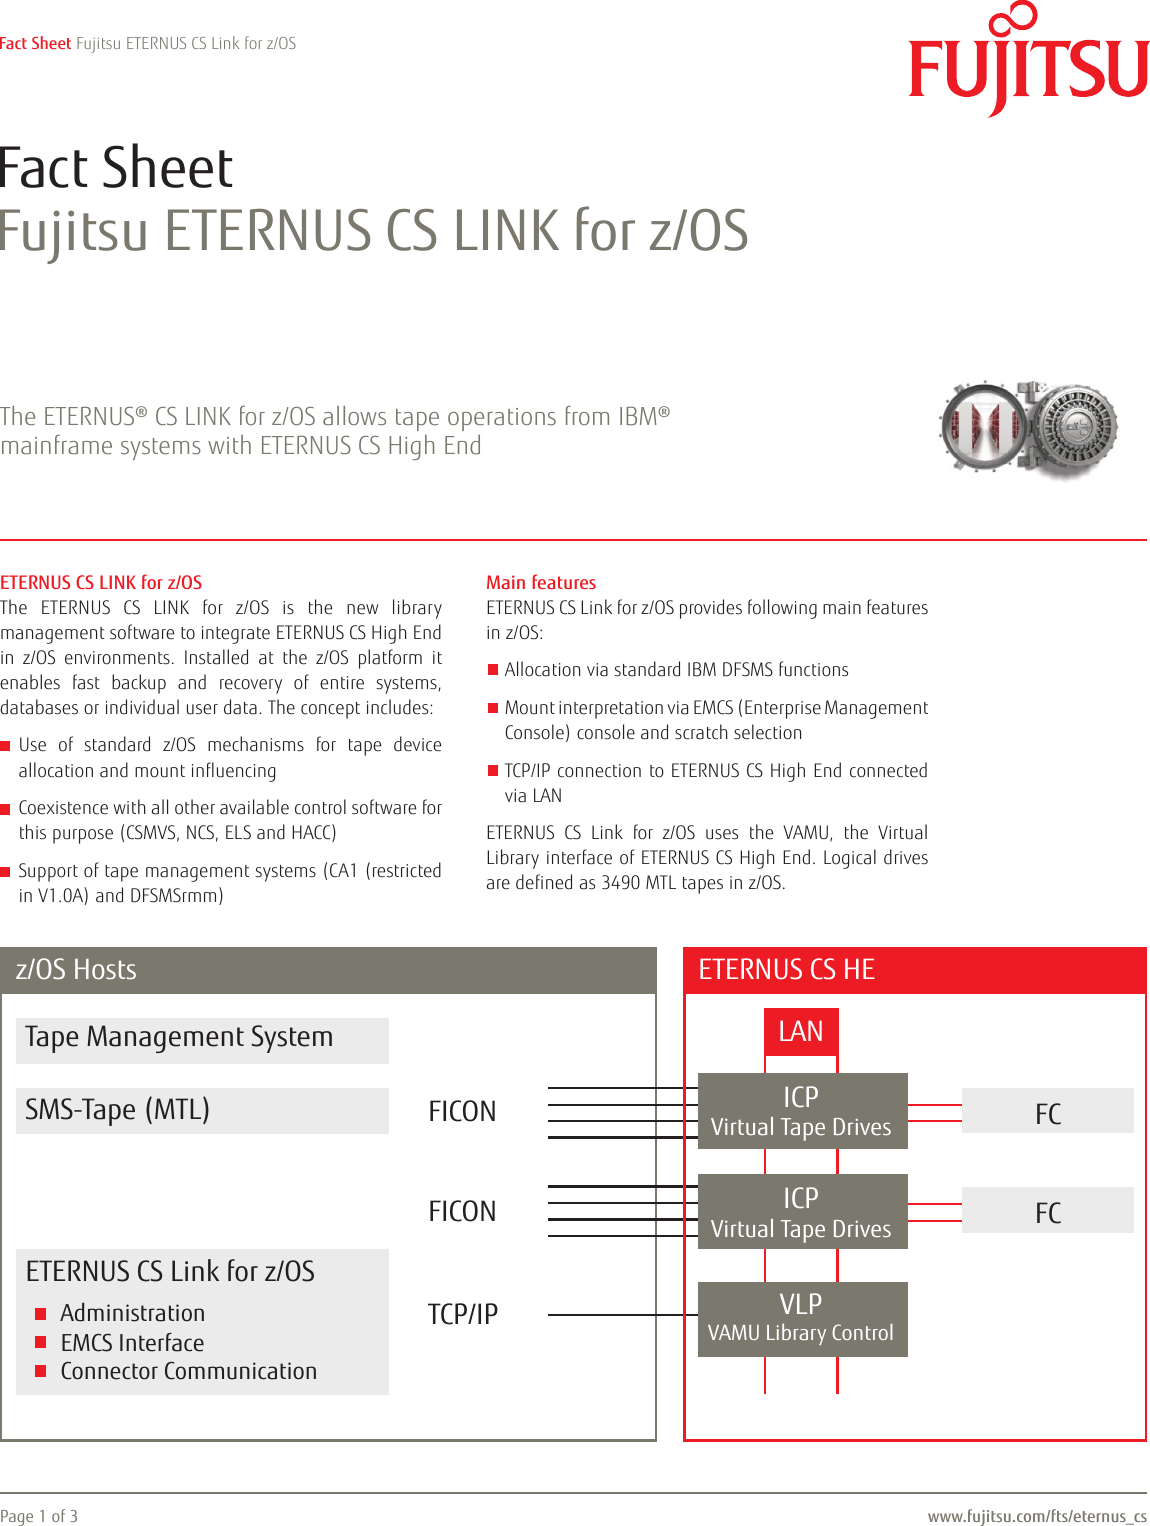 Fujitsu Eternus Cs Link For Z Os Fact Sheet Storage Z Os Factsheet